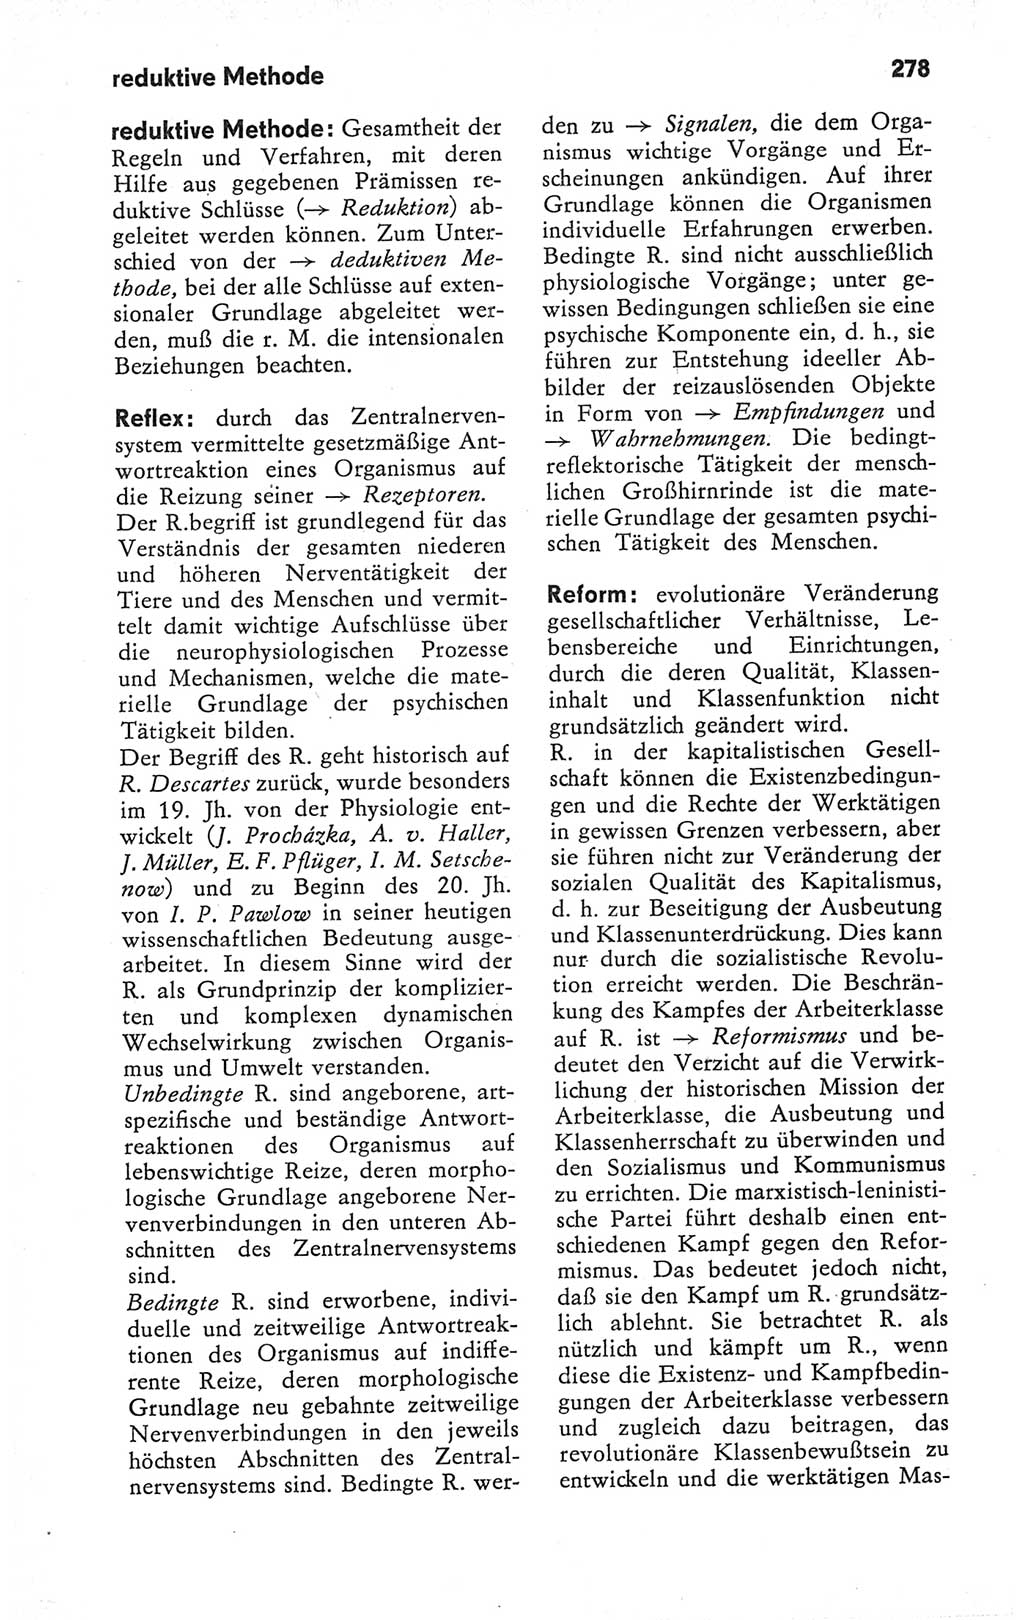 Kleines Wörterbuch der marxistisch-leninistischen Philosophie [Deutsche Demokratische Republik (DDR)] 1979, Seite 278 (Kl. Wb. ML Phil. DDR 1979, S. 278)